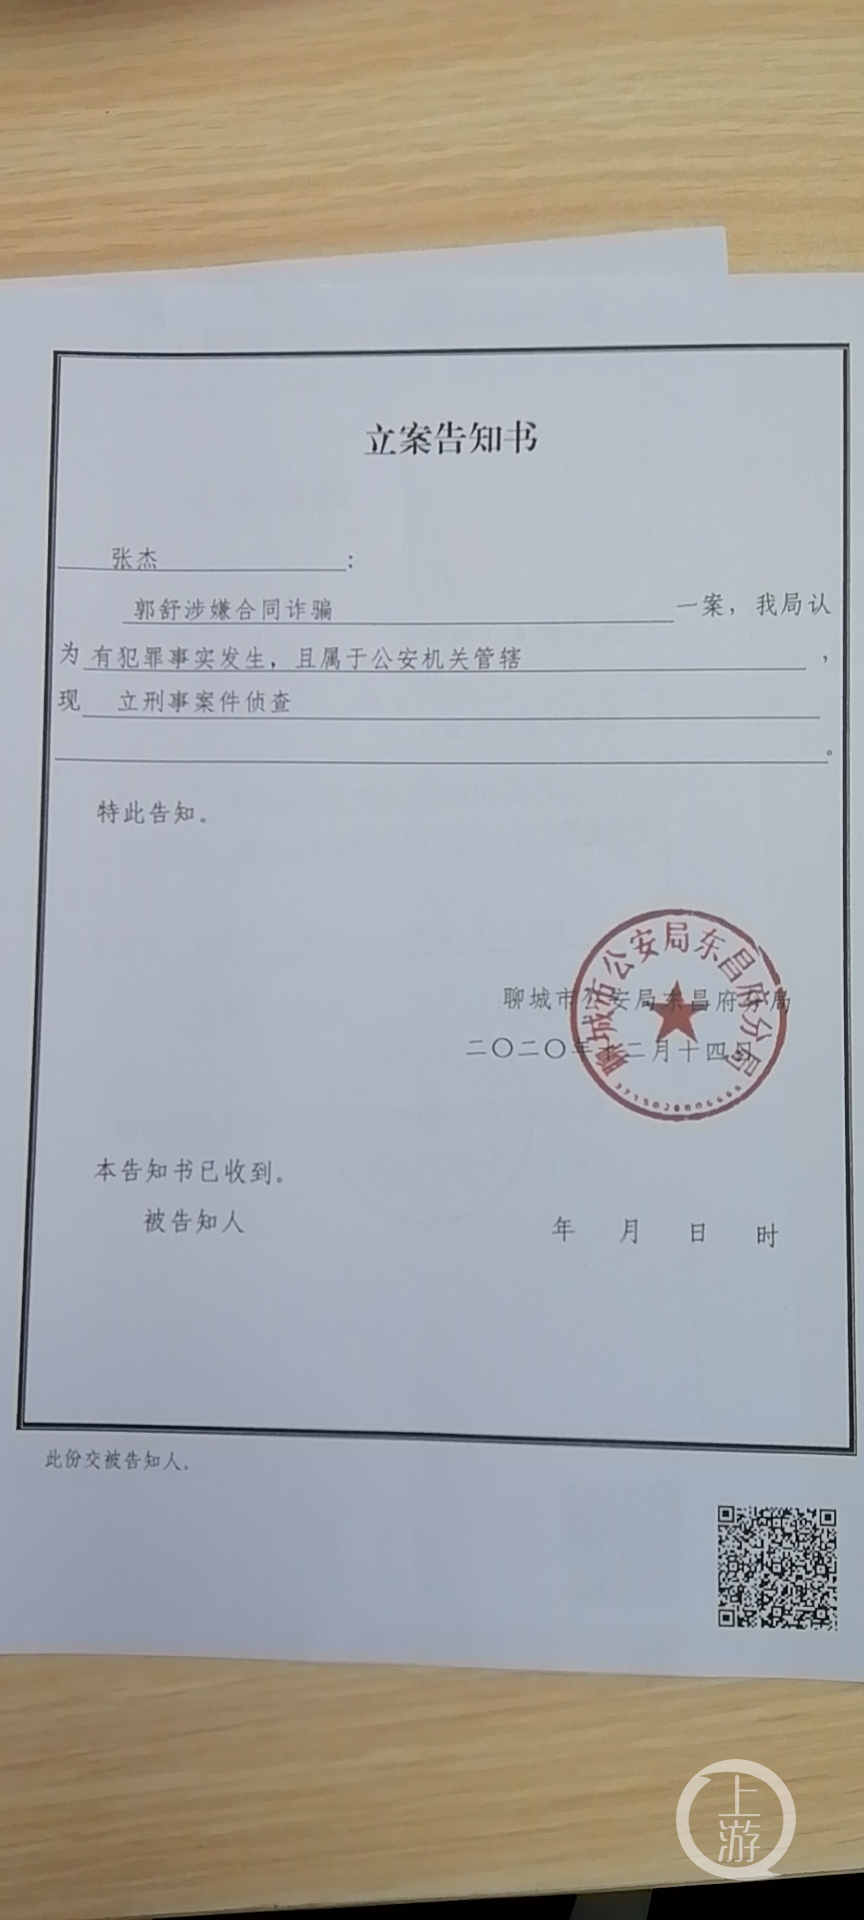 2020年12月,郭舒涉嫌合同诈骗被公安立案侦查